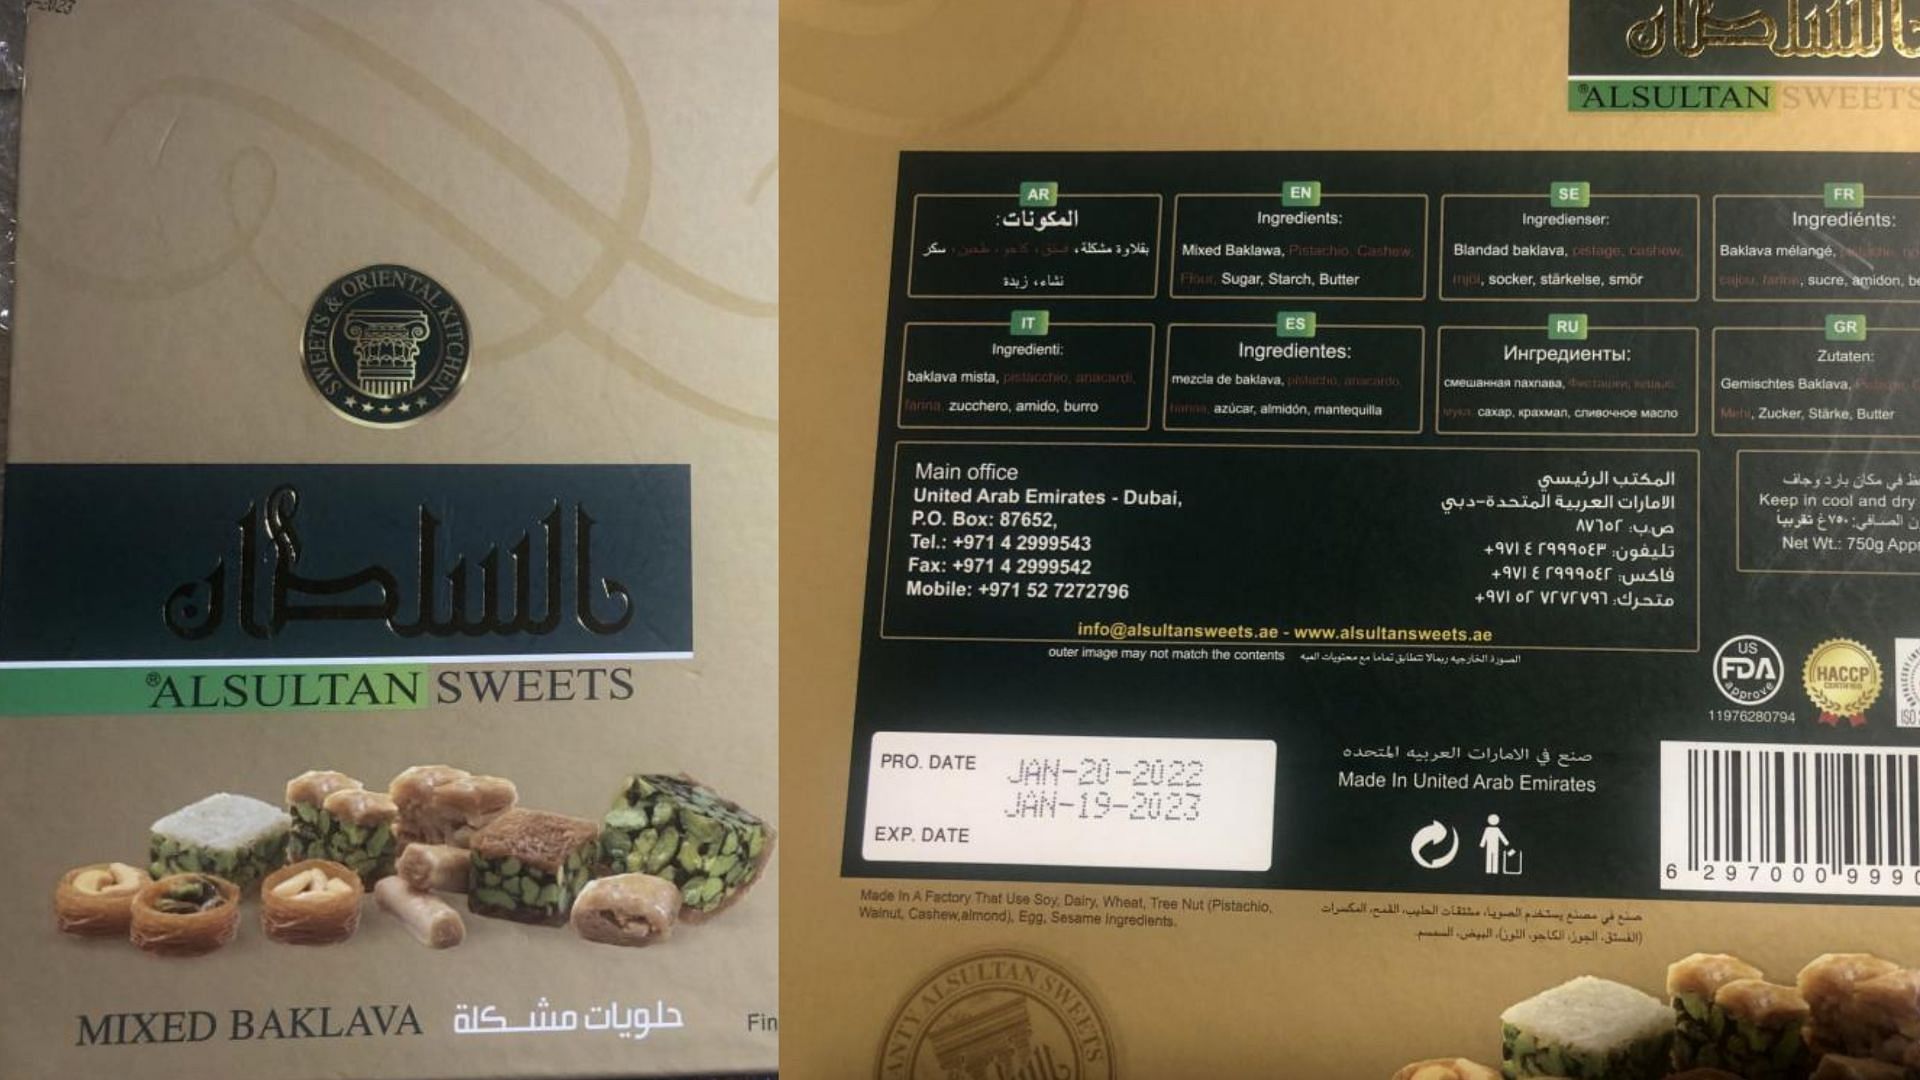 recalled package of Al Sultan Baklava (Image via FDA)